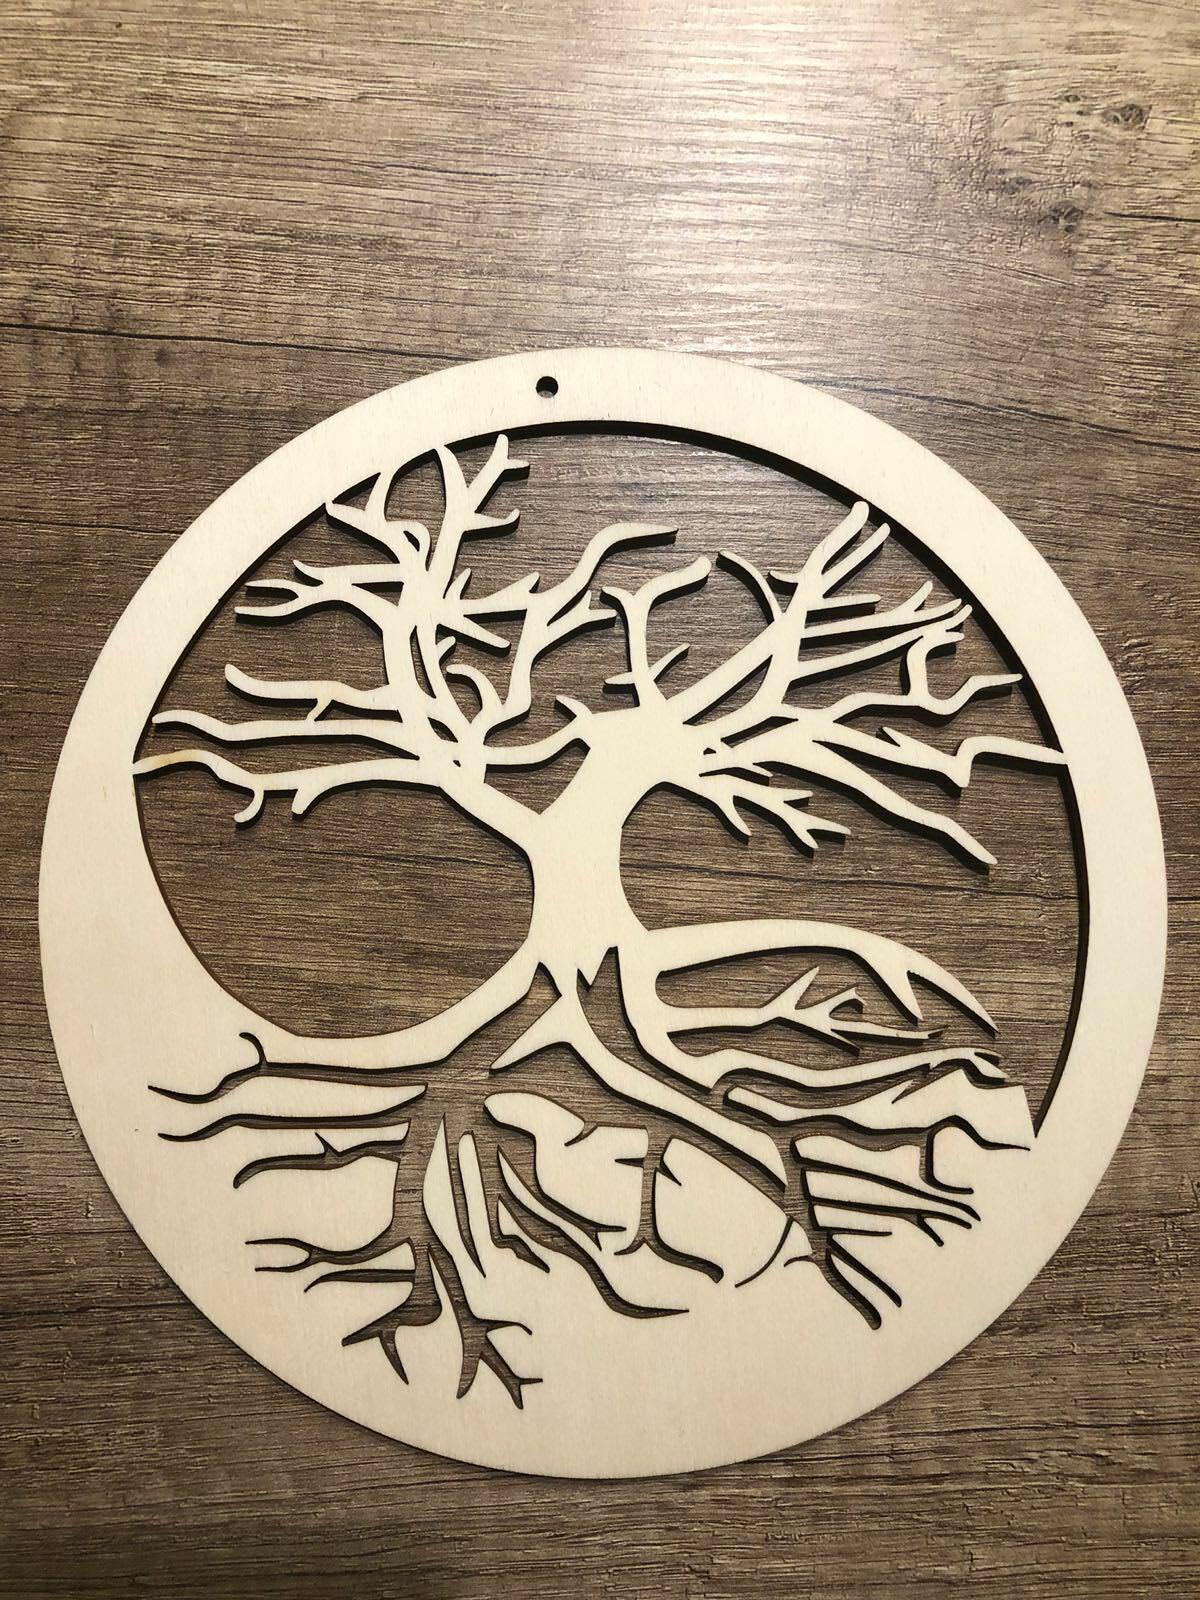 Holzwand Deko Einzigartig Dekoracje Baum Des Lebens Lebensbaum Wanddeko Bild Deko